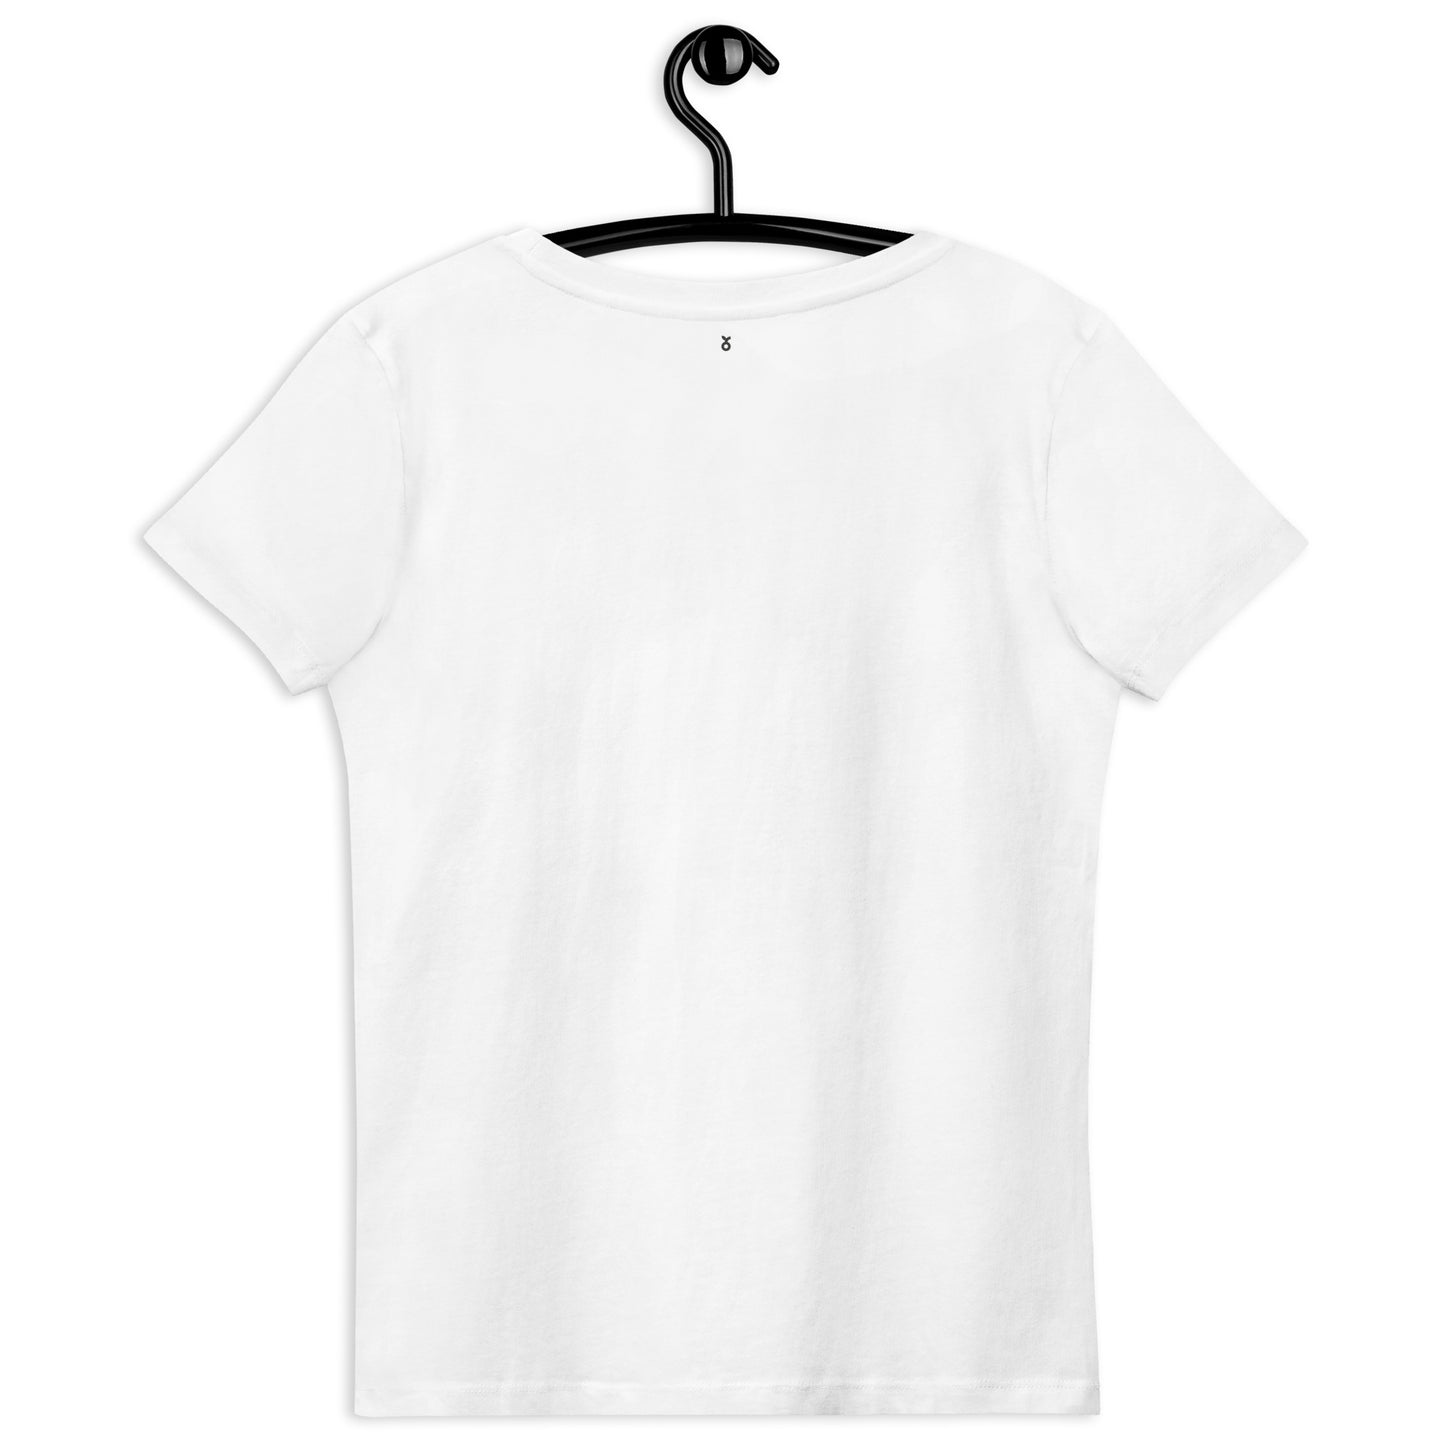 Weißes T-Shirt aus Bio-Baumwolle im Bauhaus-Stil mit Frühlingsvögeln-Stickerei - Damen weiß